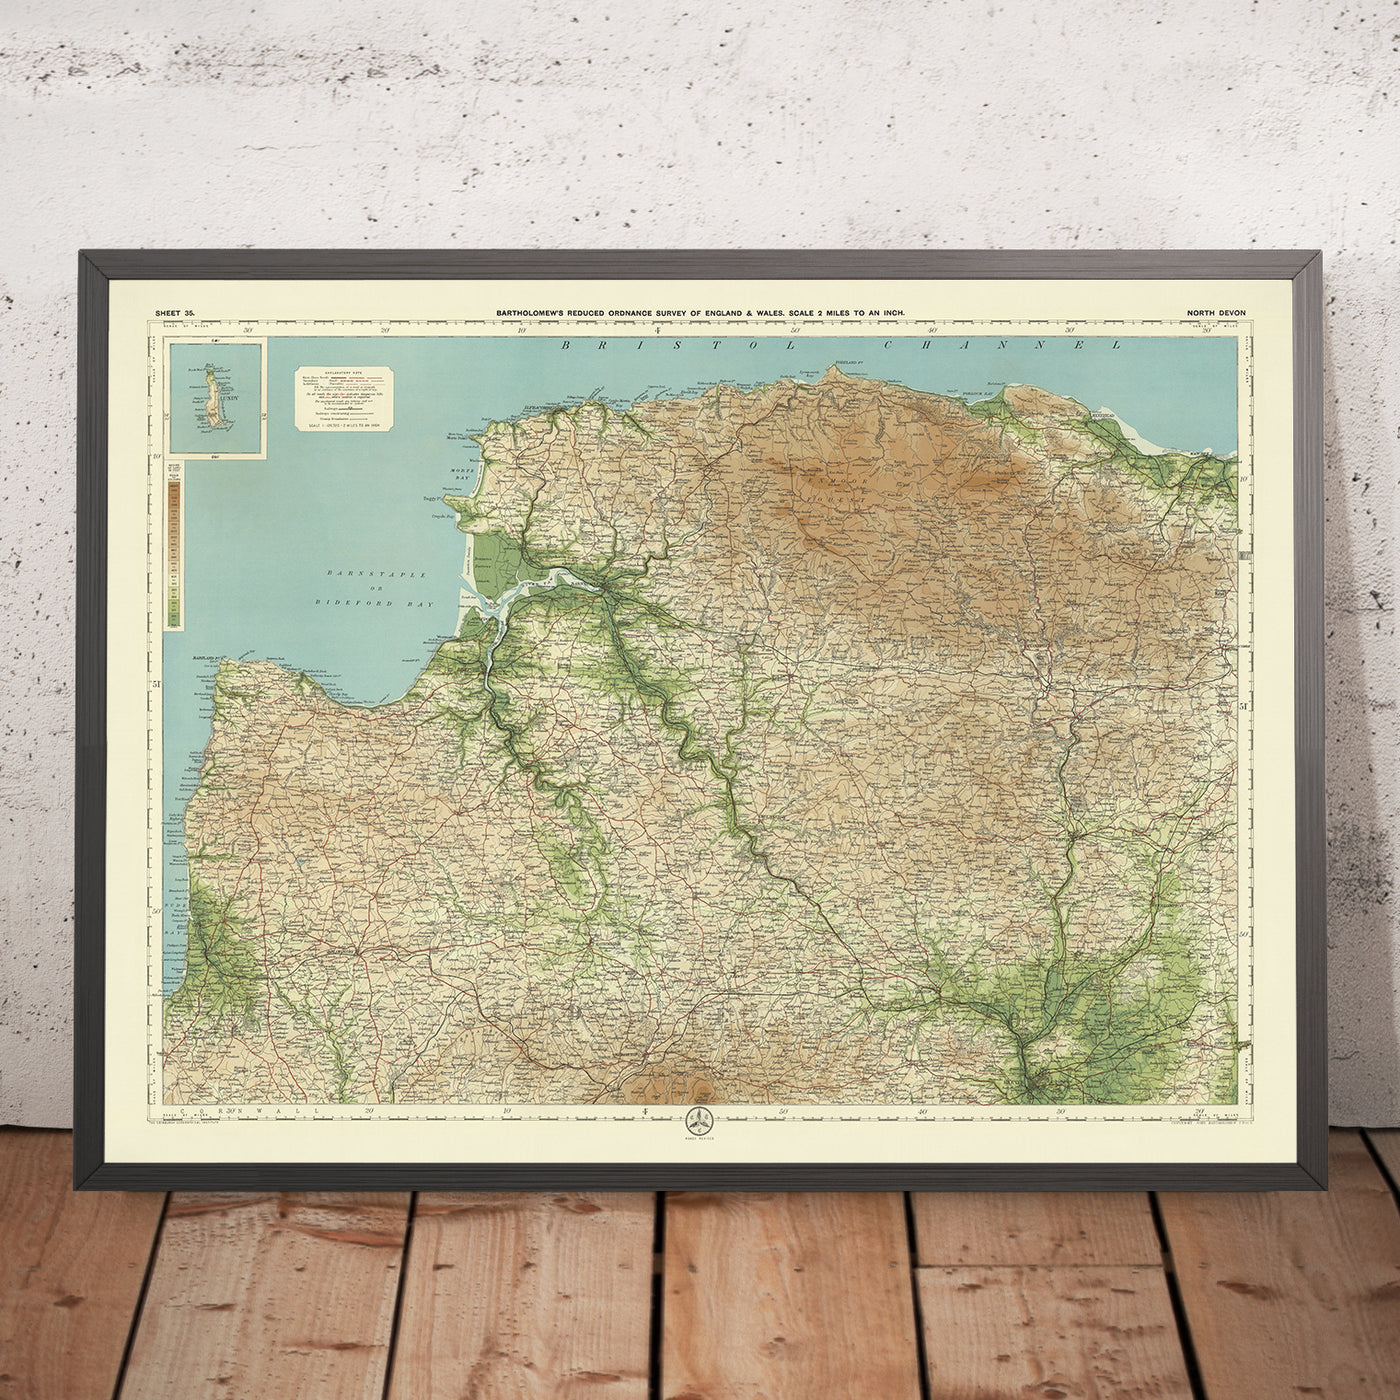 Alte OS-Karte von North Devon von Bartholomew, 1901: Barnstaple, Exmoor, River Taw, Bideford Bay, Lundy Island